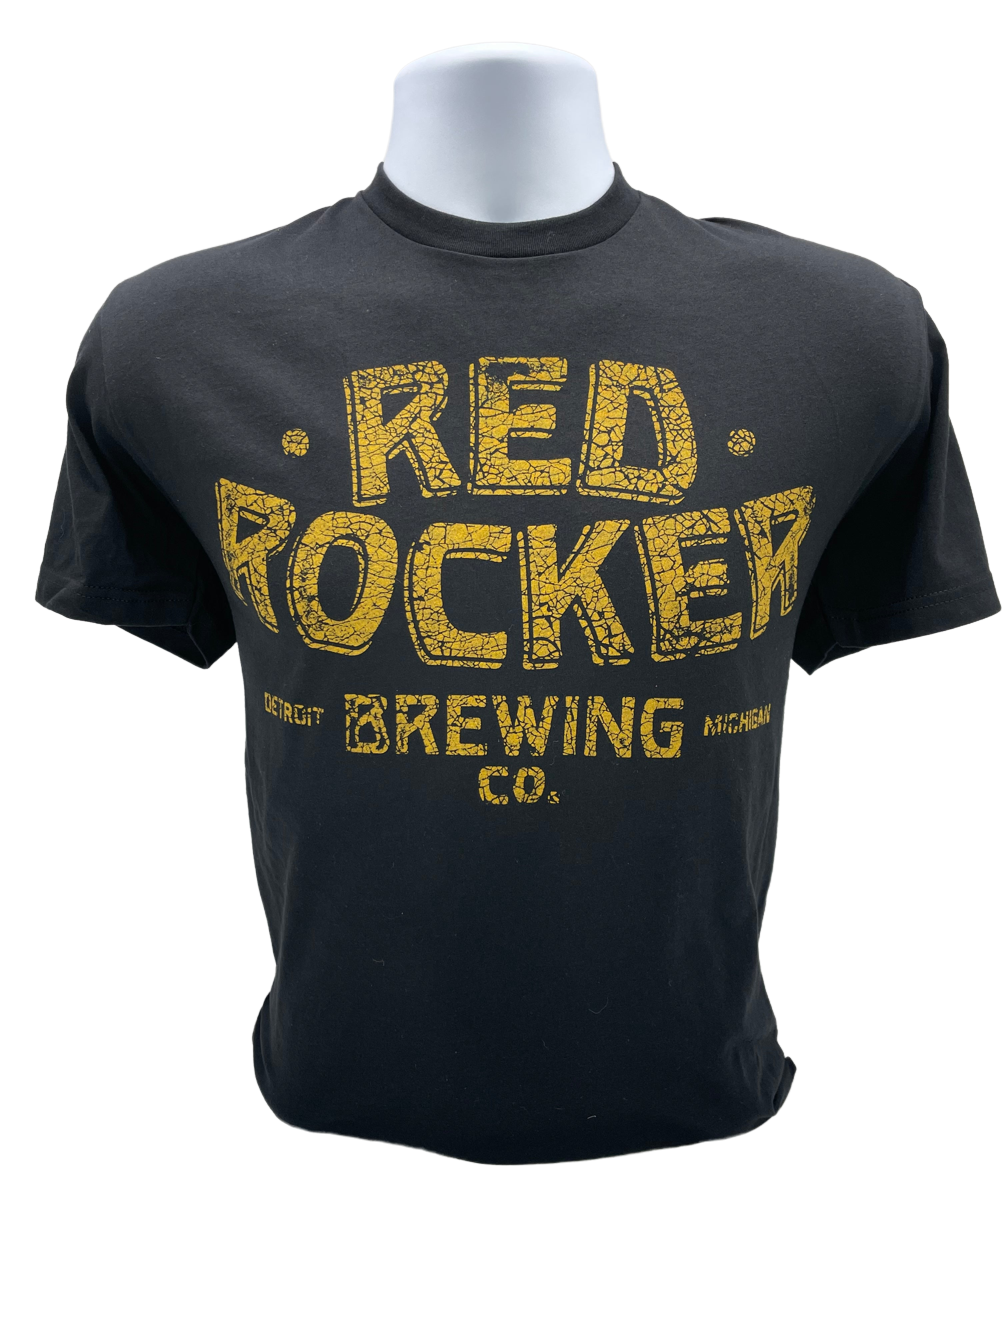 Red Rocker Brewing Co. T-shirt